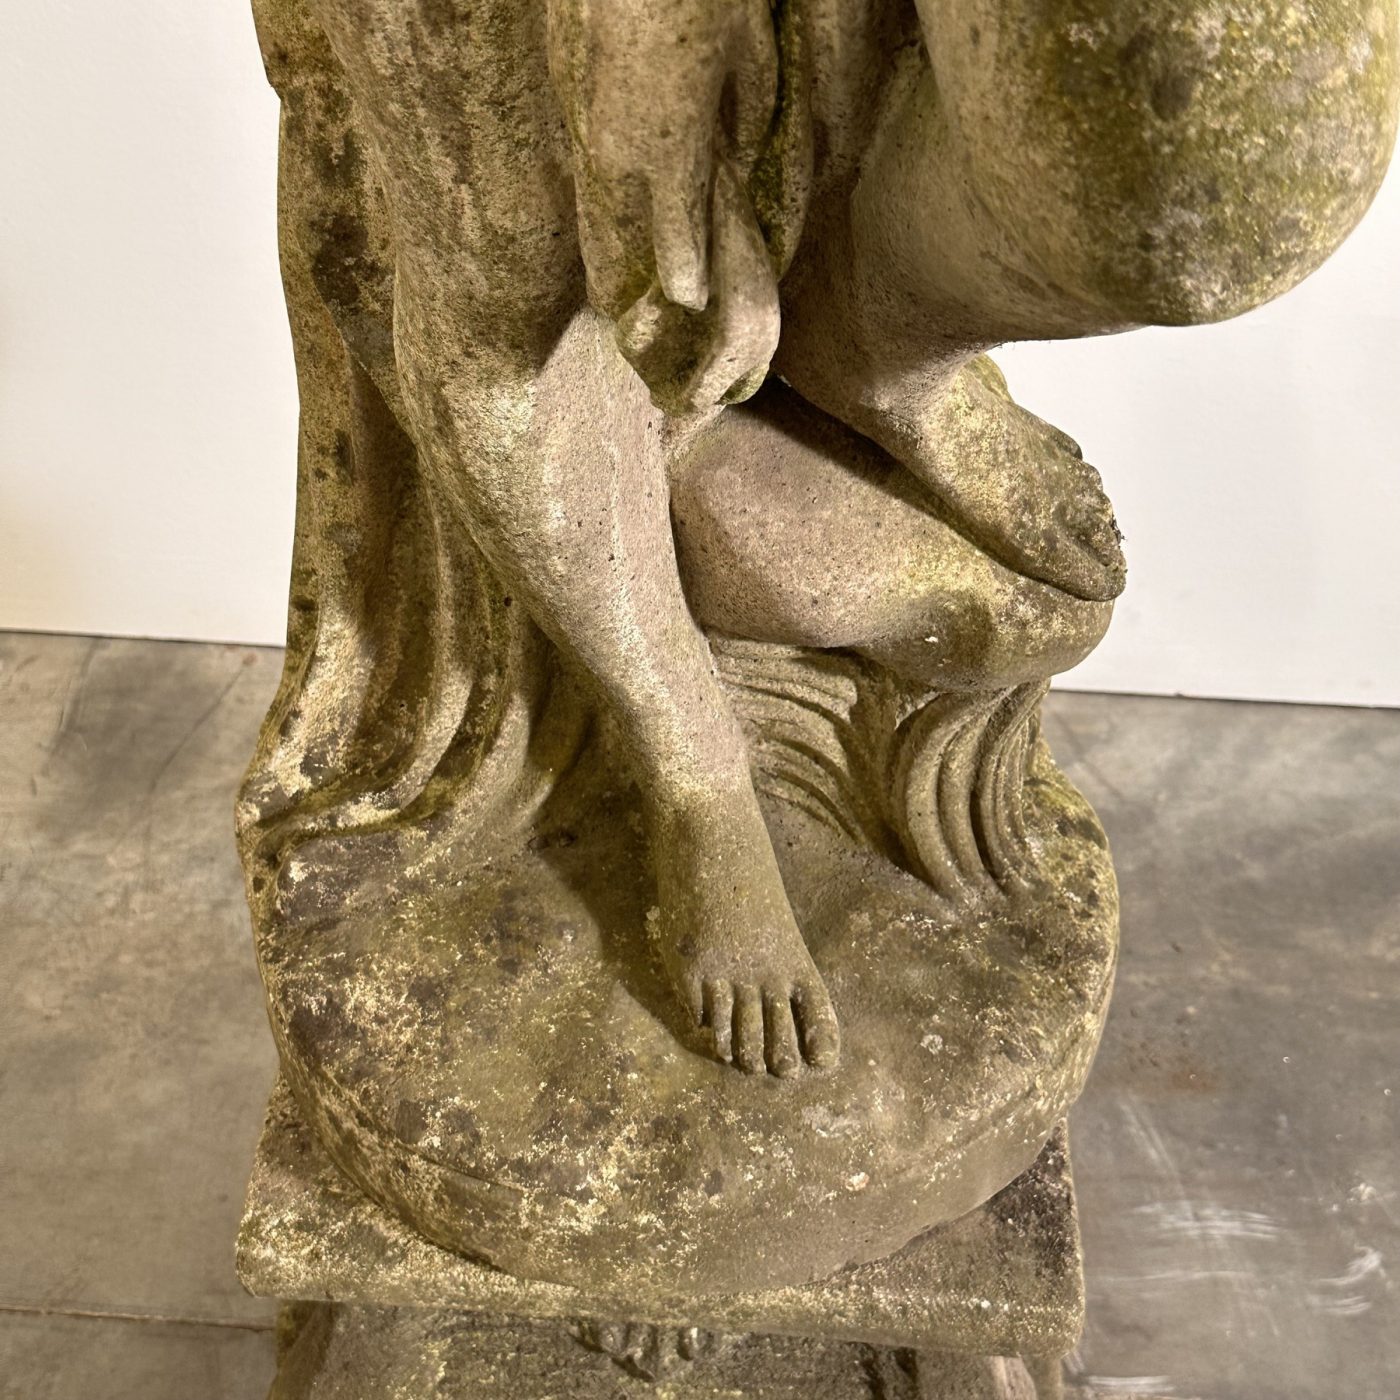 objet-vagabond-concrete-statue0002